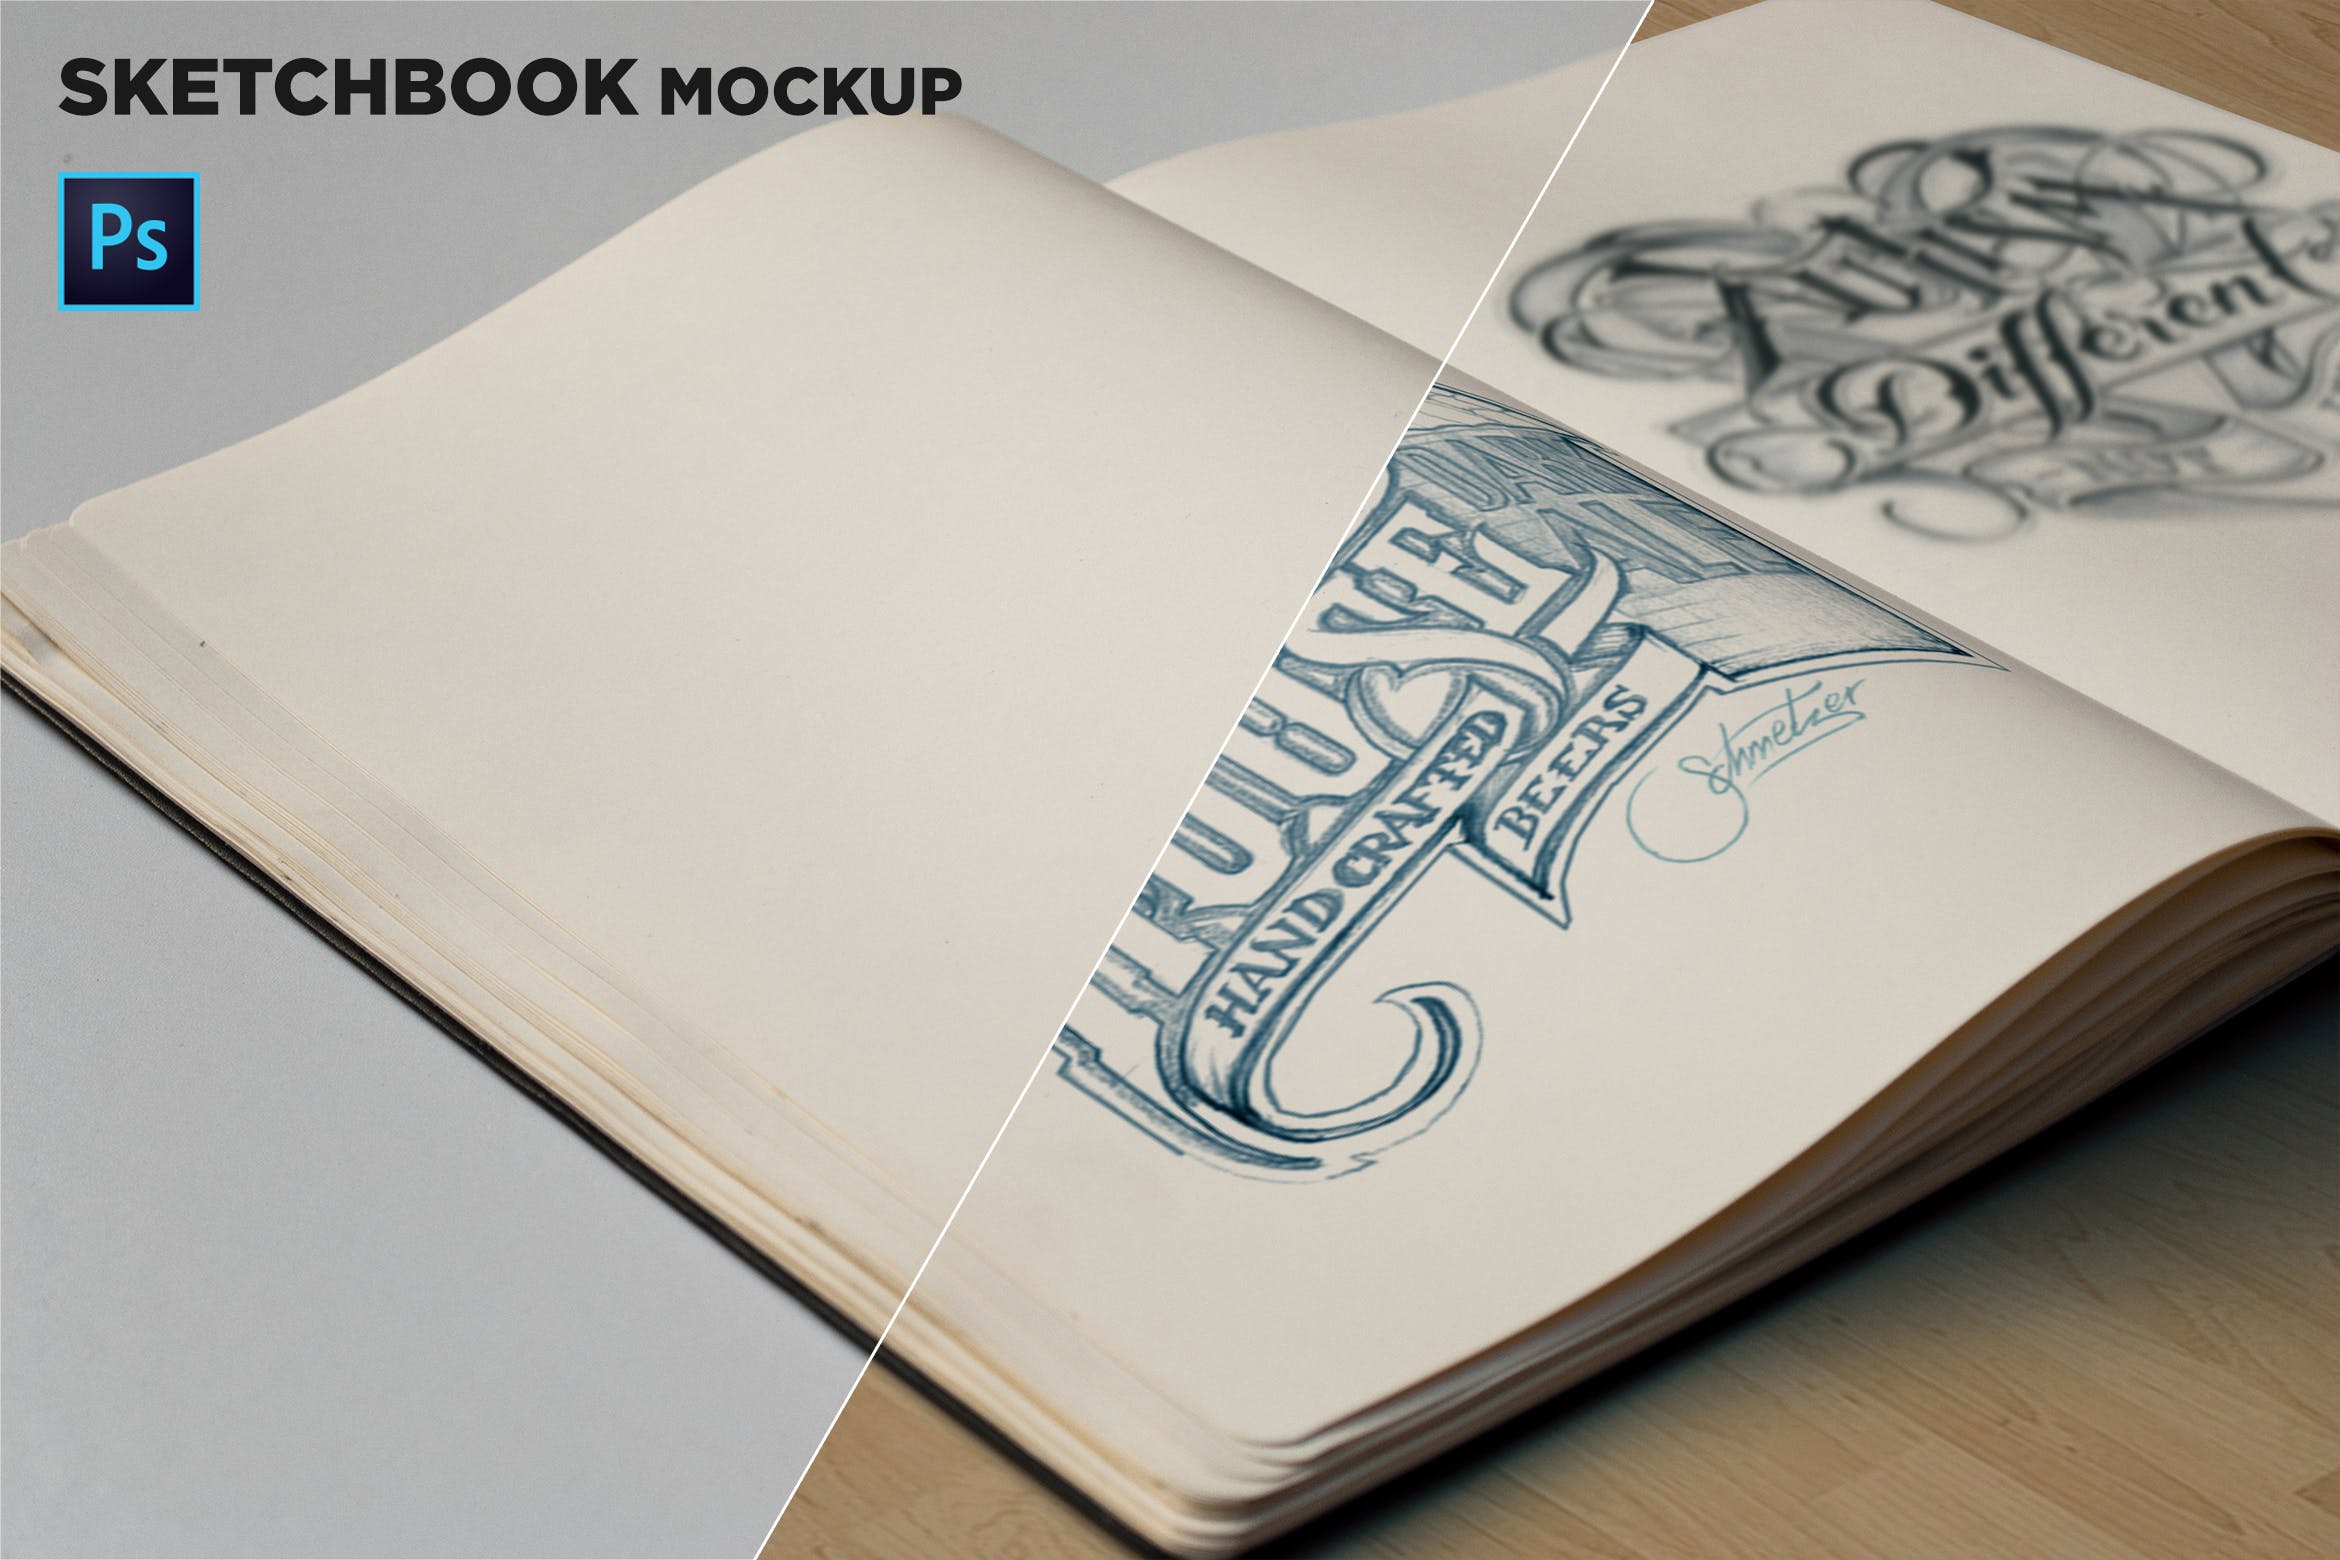 素描本内页设计/艺术作品展示特写镜头样机蚂蚁素材精选 Sketchbook Mockup Closeup插图